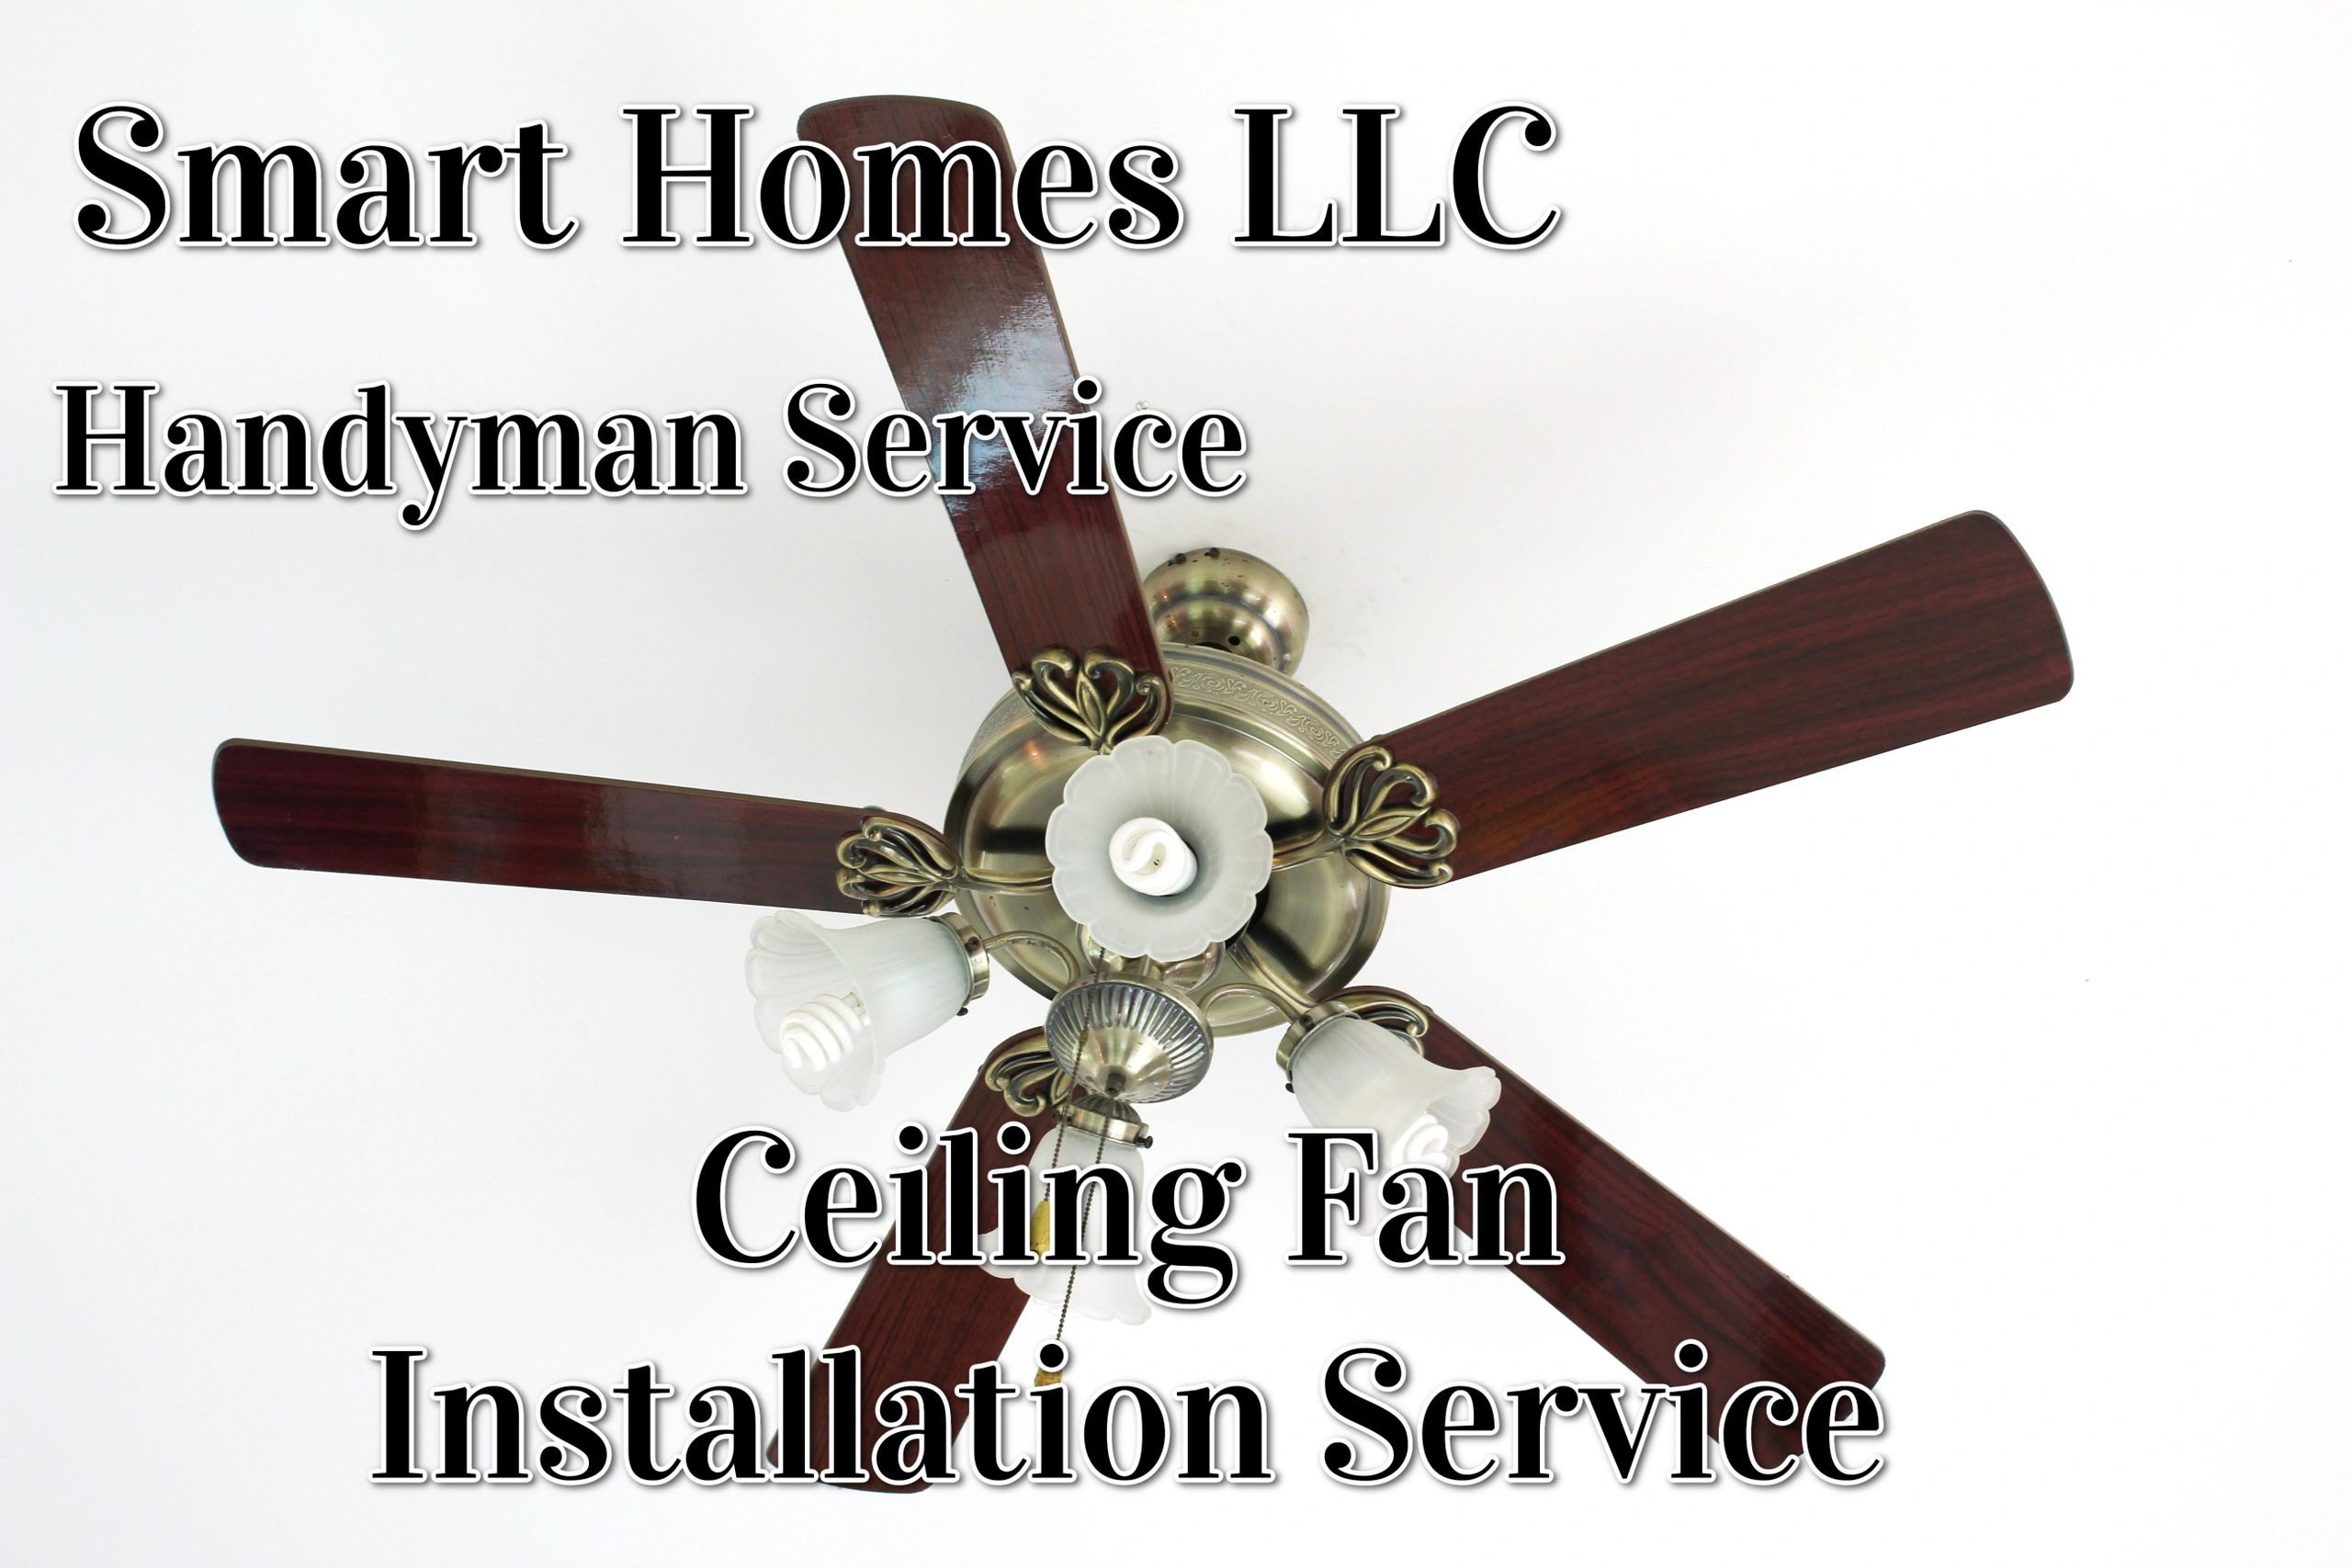 Ceiling fan Installation service